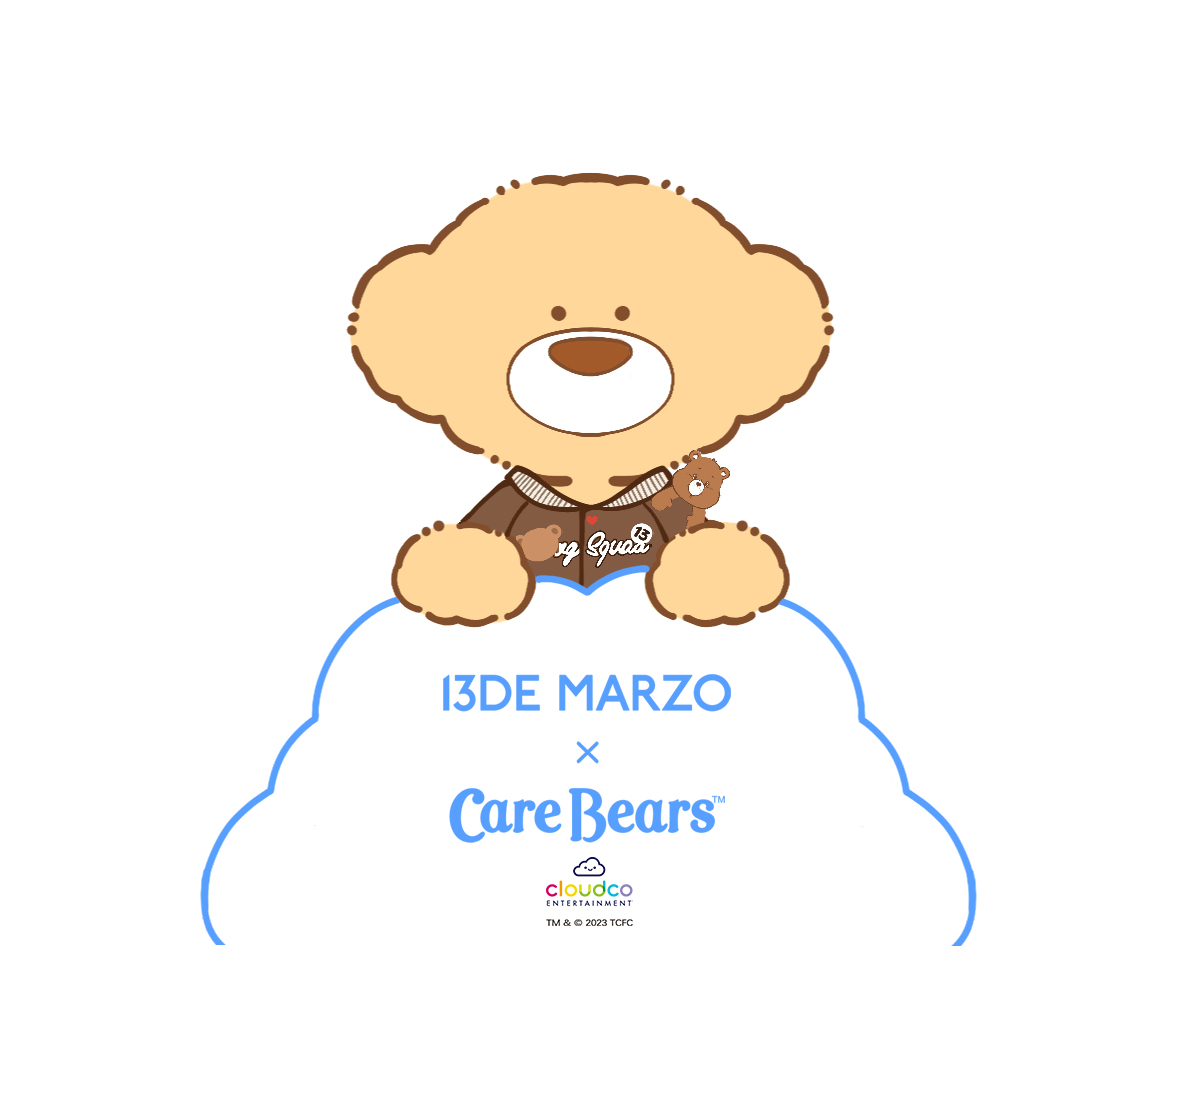 13DE MARZO x CARE BEARS